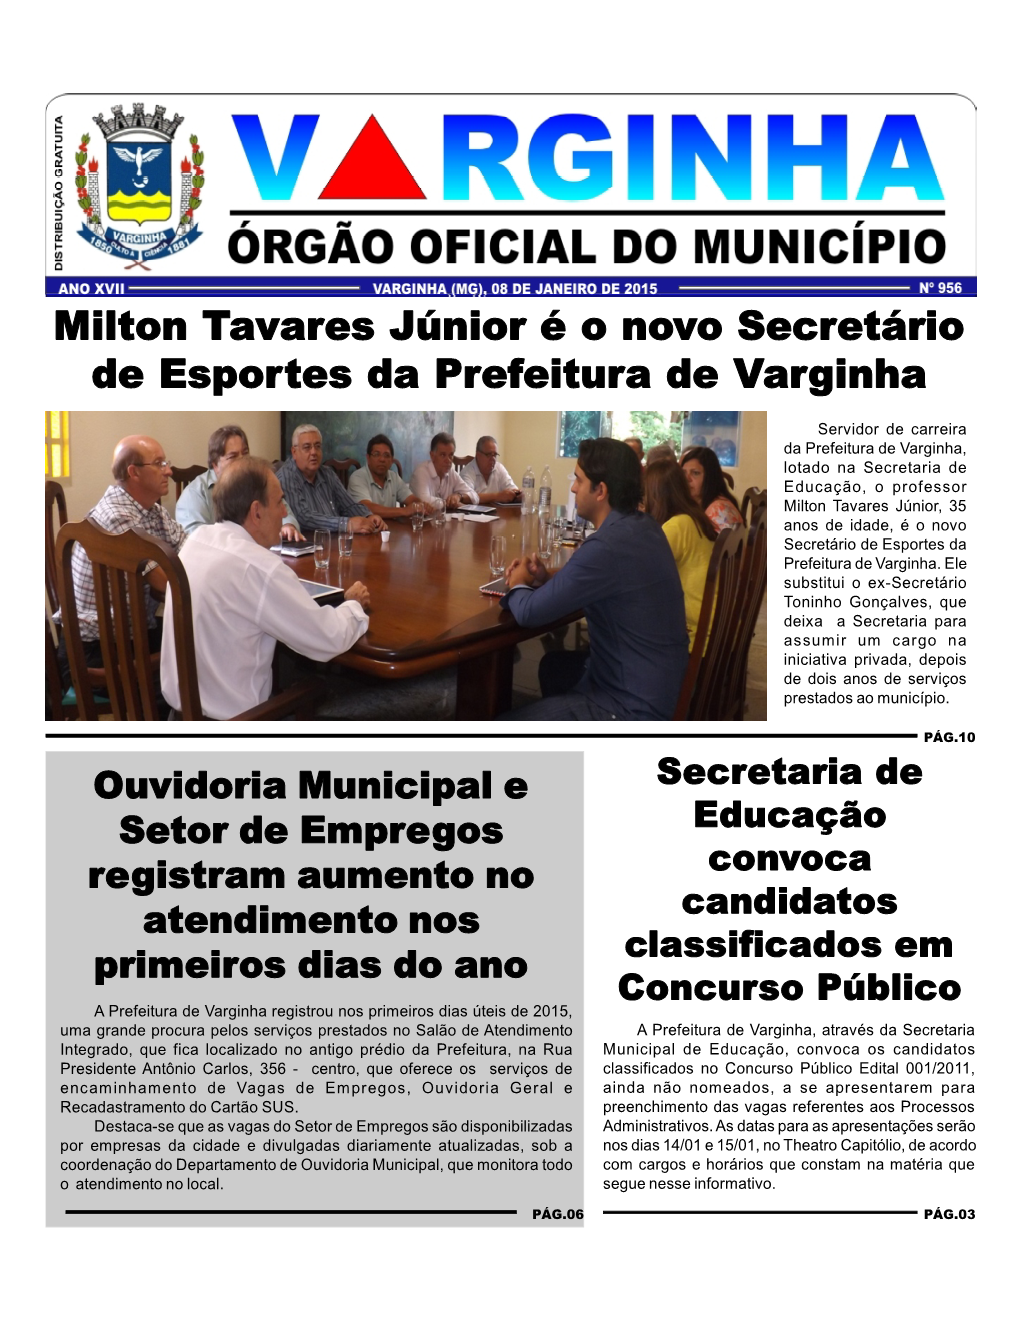 Milton Tavares Júnior É O Novo Secretário De Esportes Da Prefeitura De Varginha